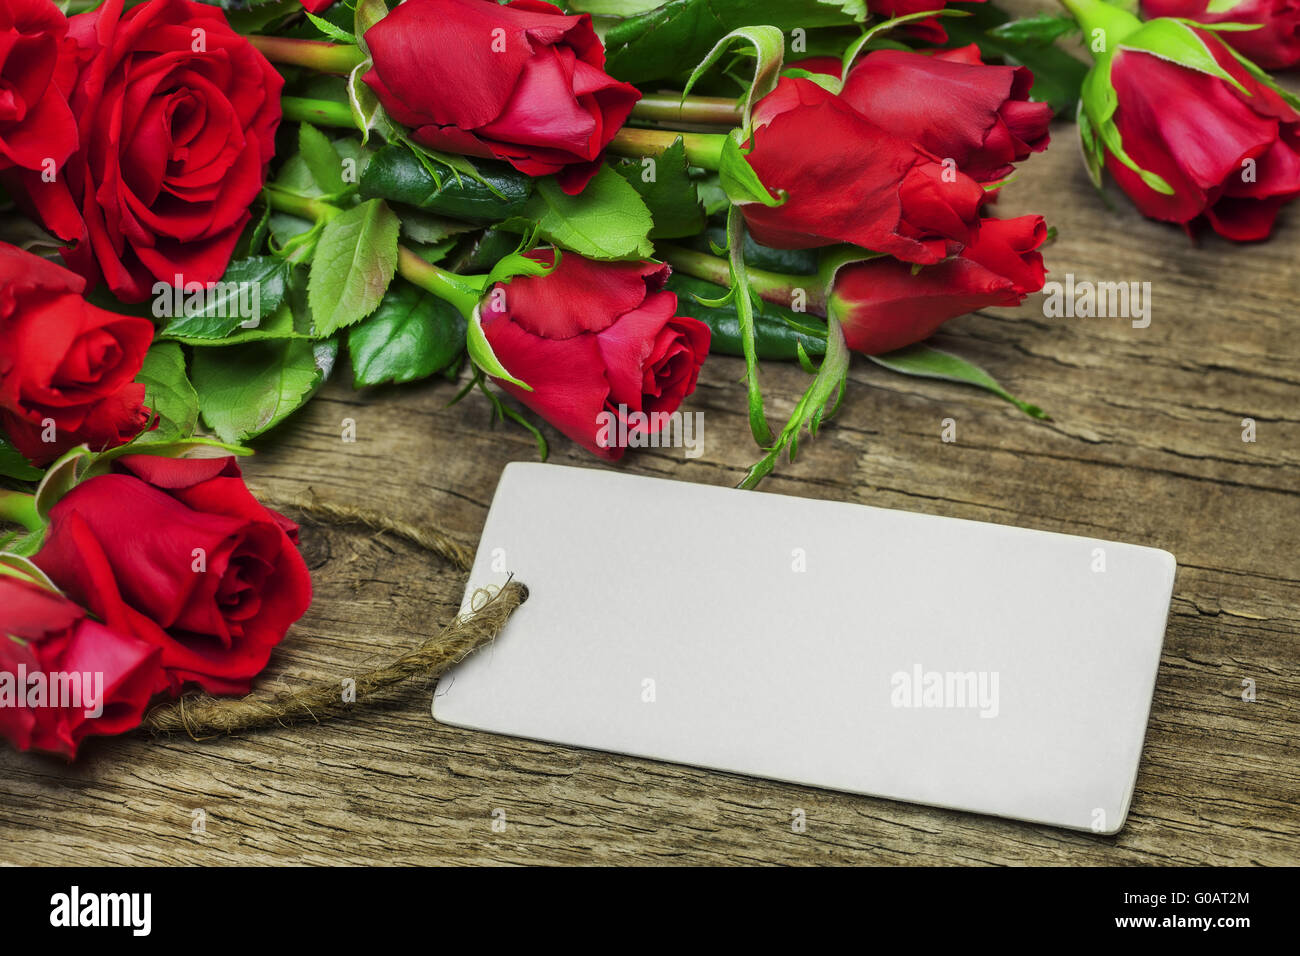 Bouquet de roses rouges avec une feuille blanche sur bois Banque D'Images